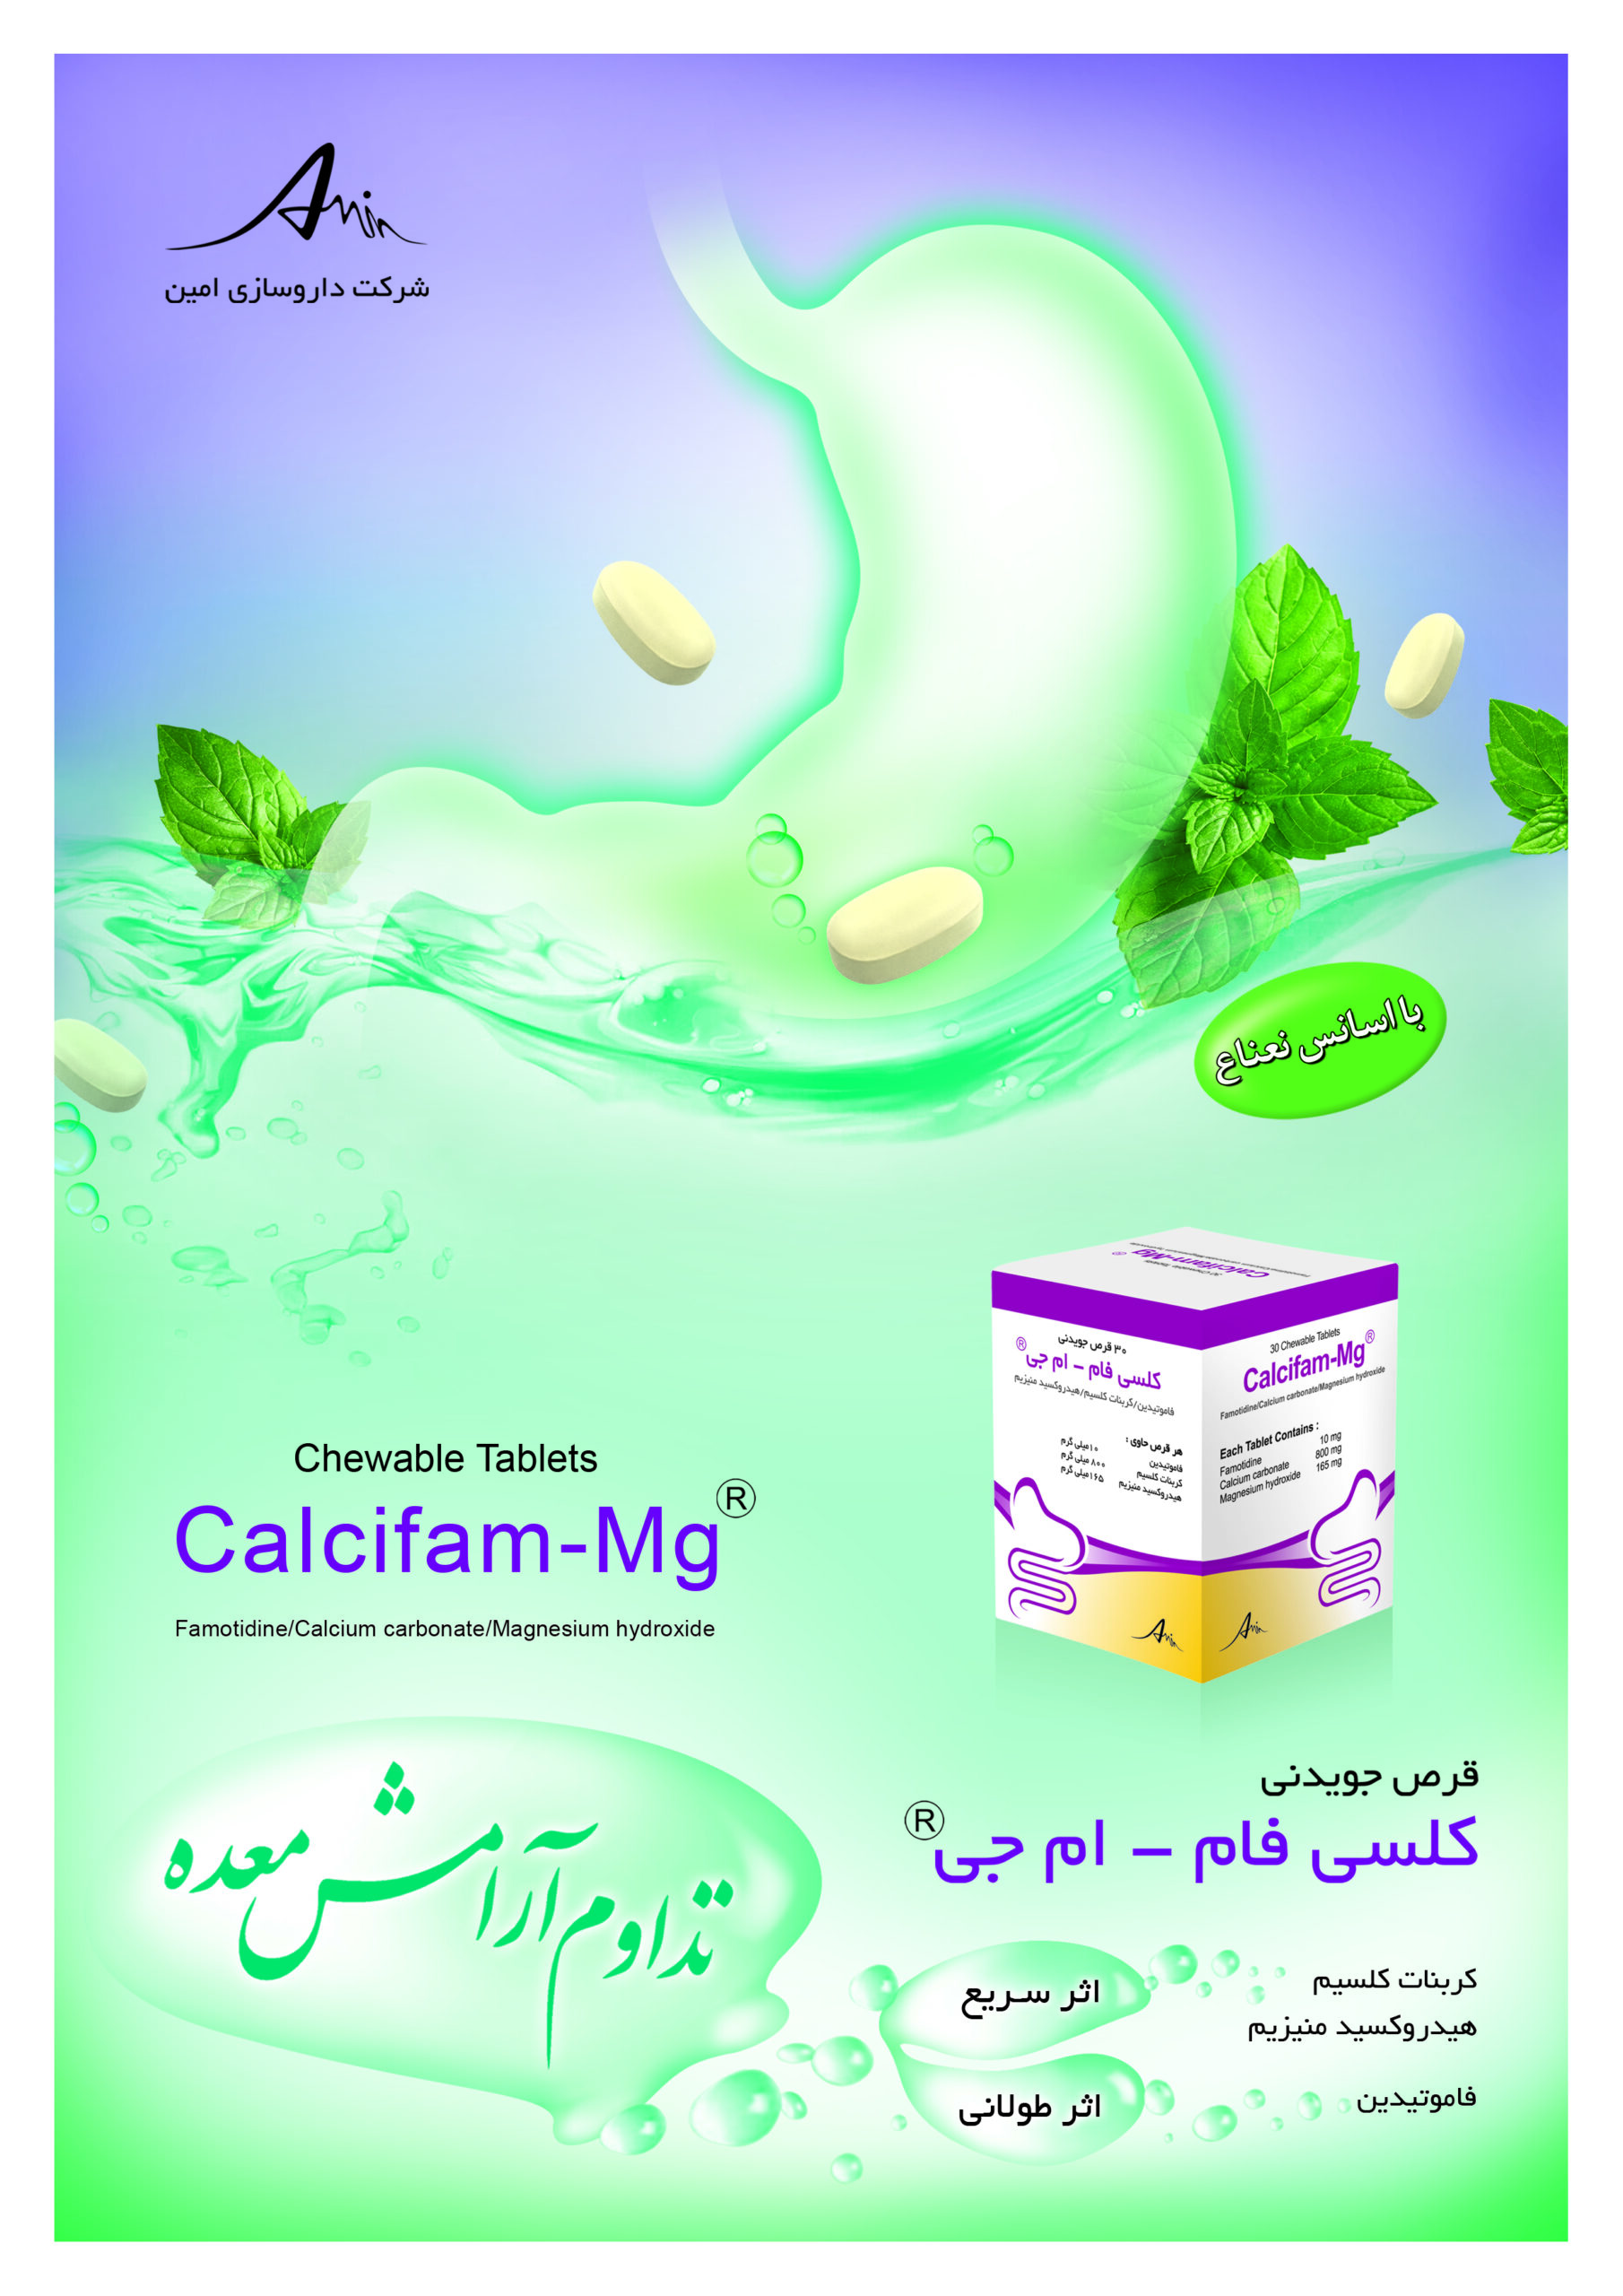 Famotidine+Calcium carbonate+Magnesium hydroxide